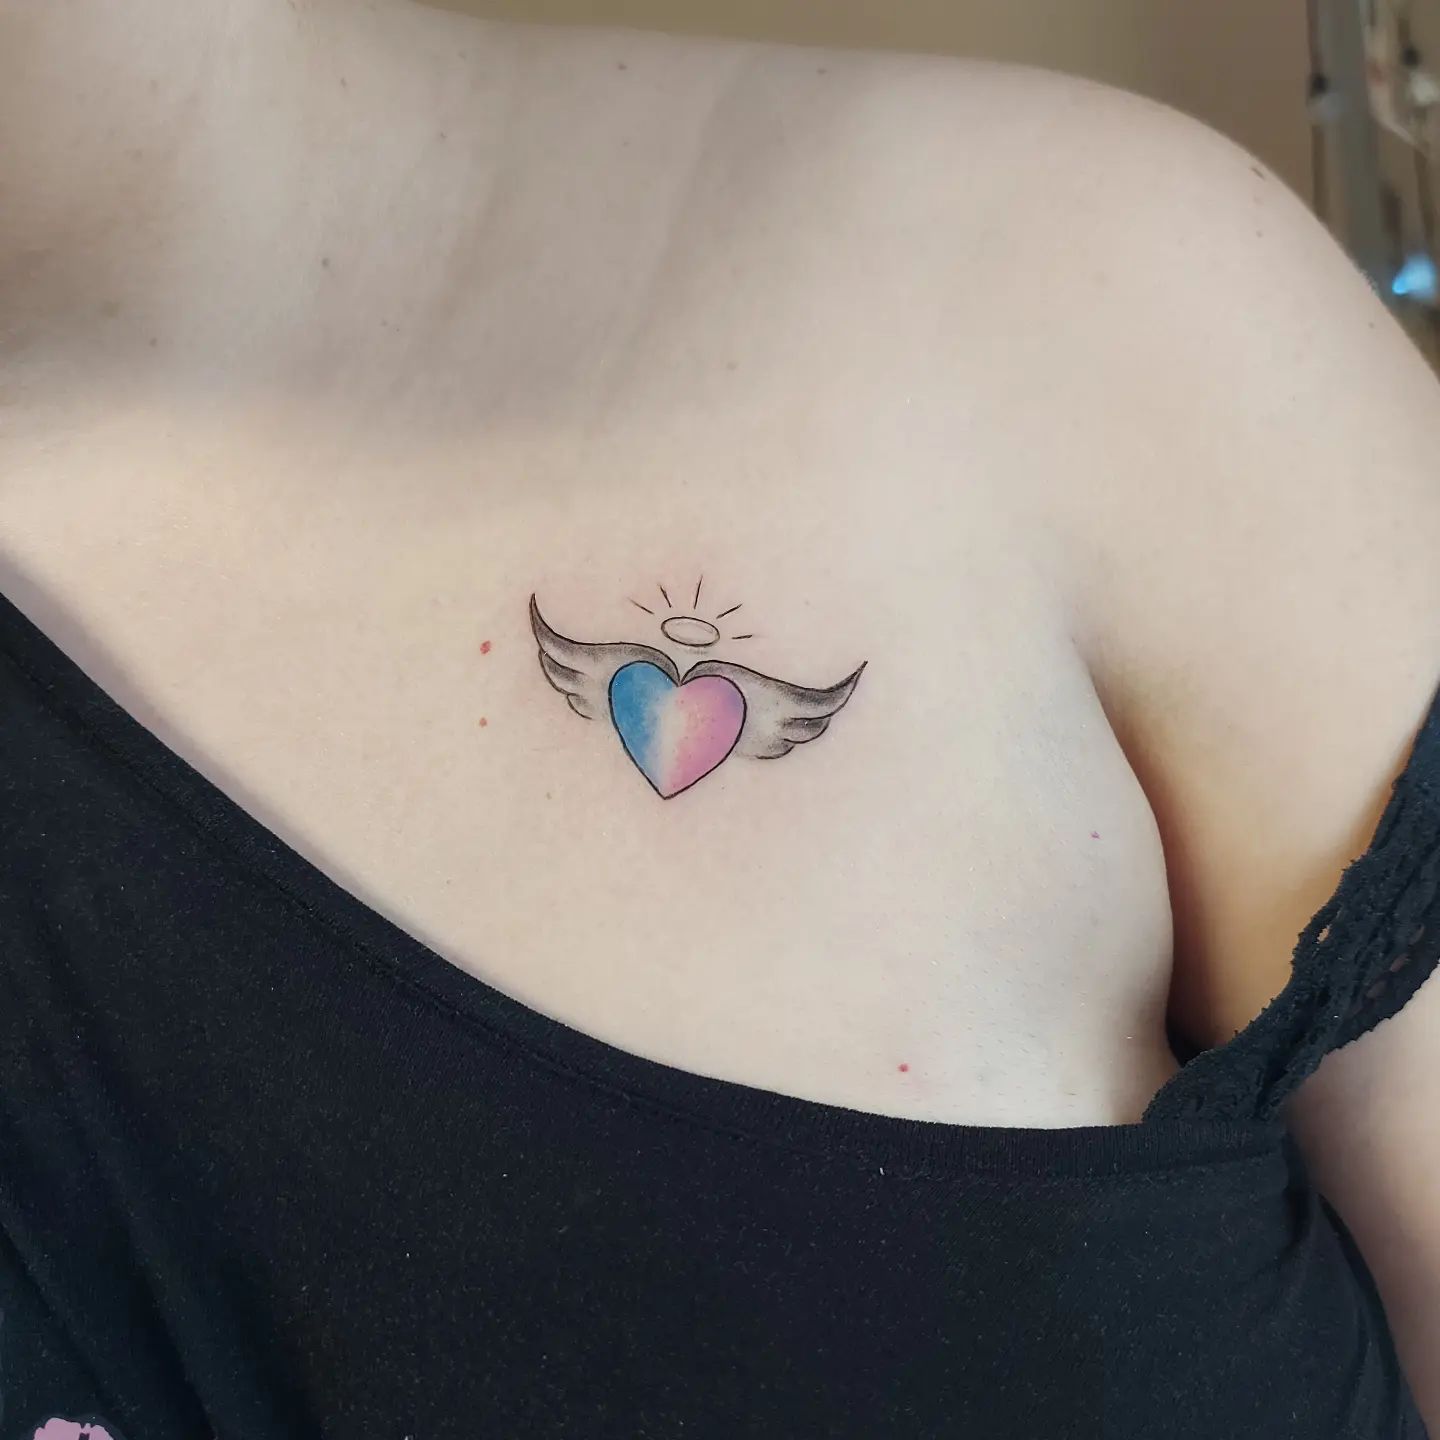 Tatuaje pequeño y colorido de un corazón en la clavícula.